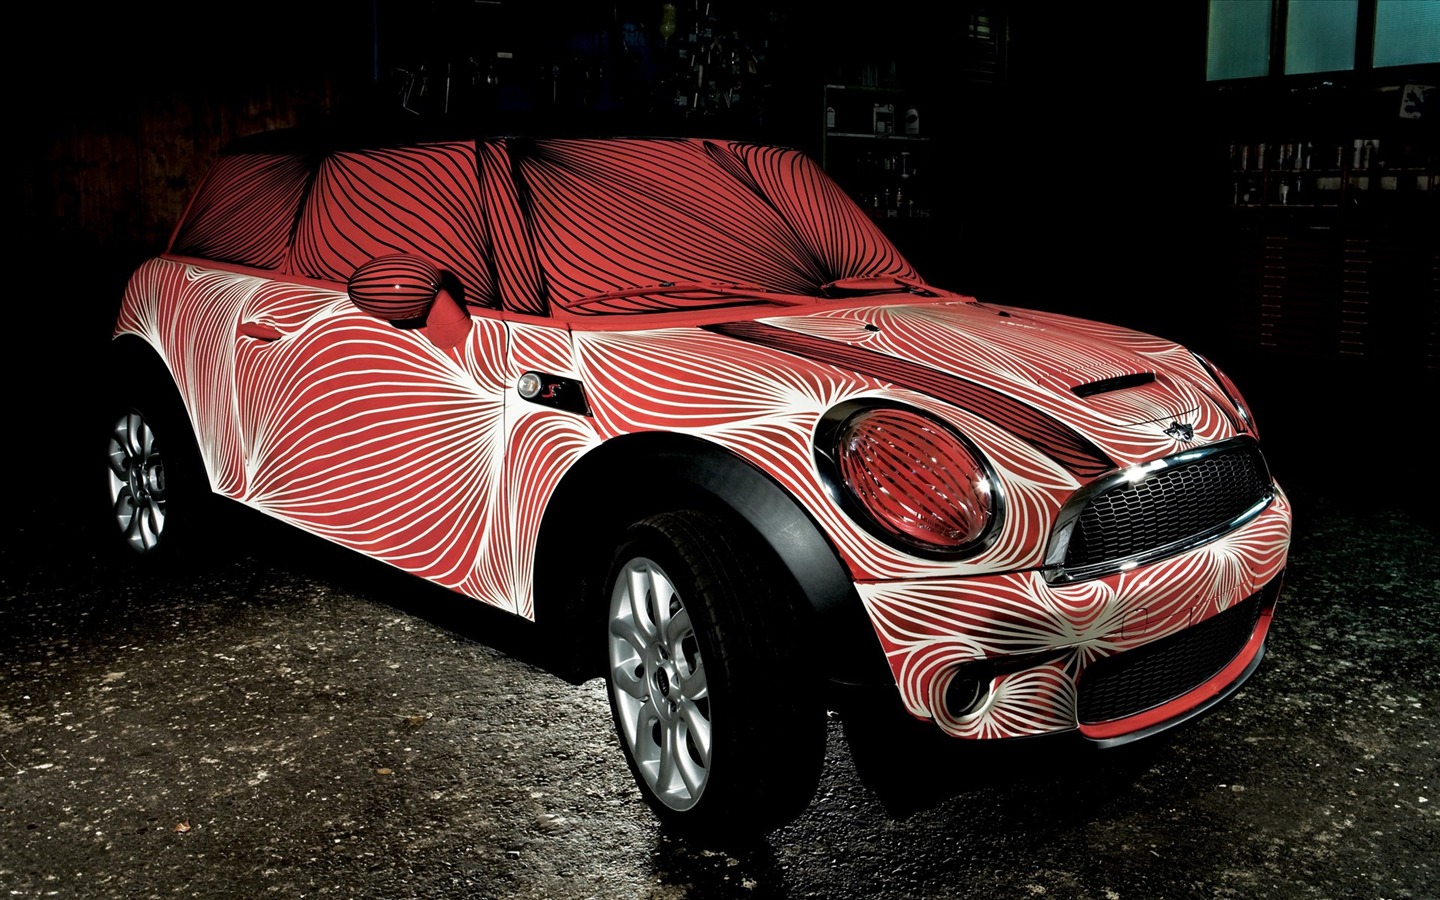 Fond d'écran personnalisés peints voiture #21 - 1440x900